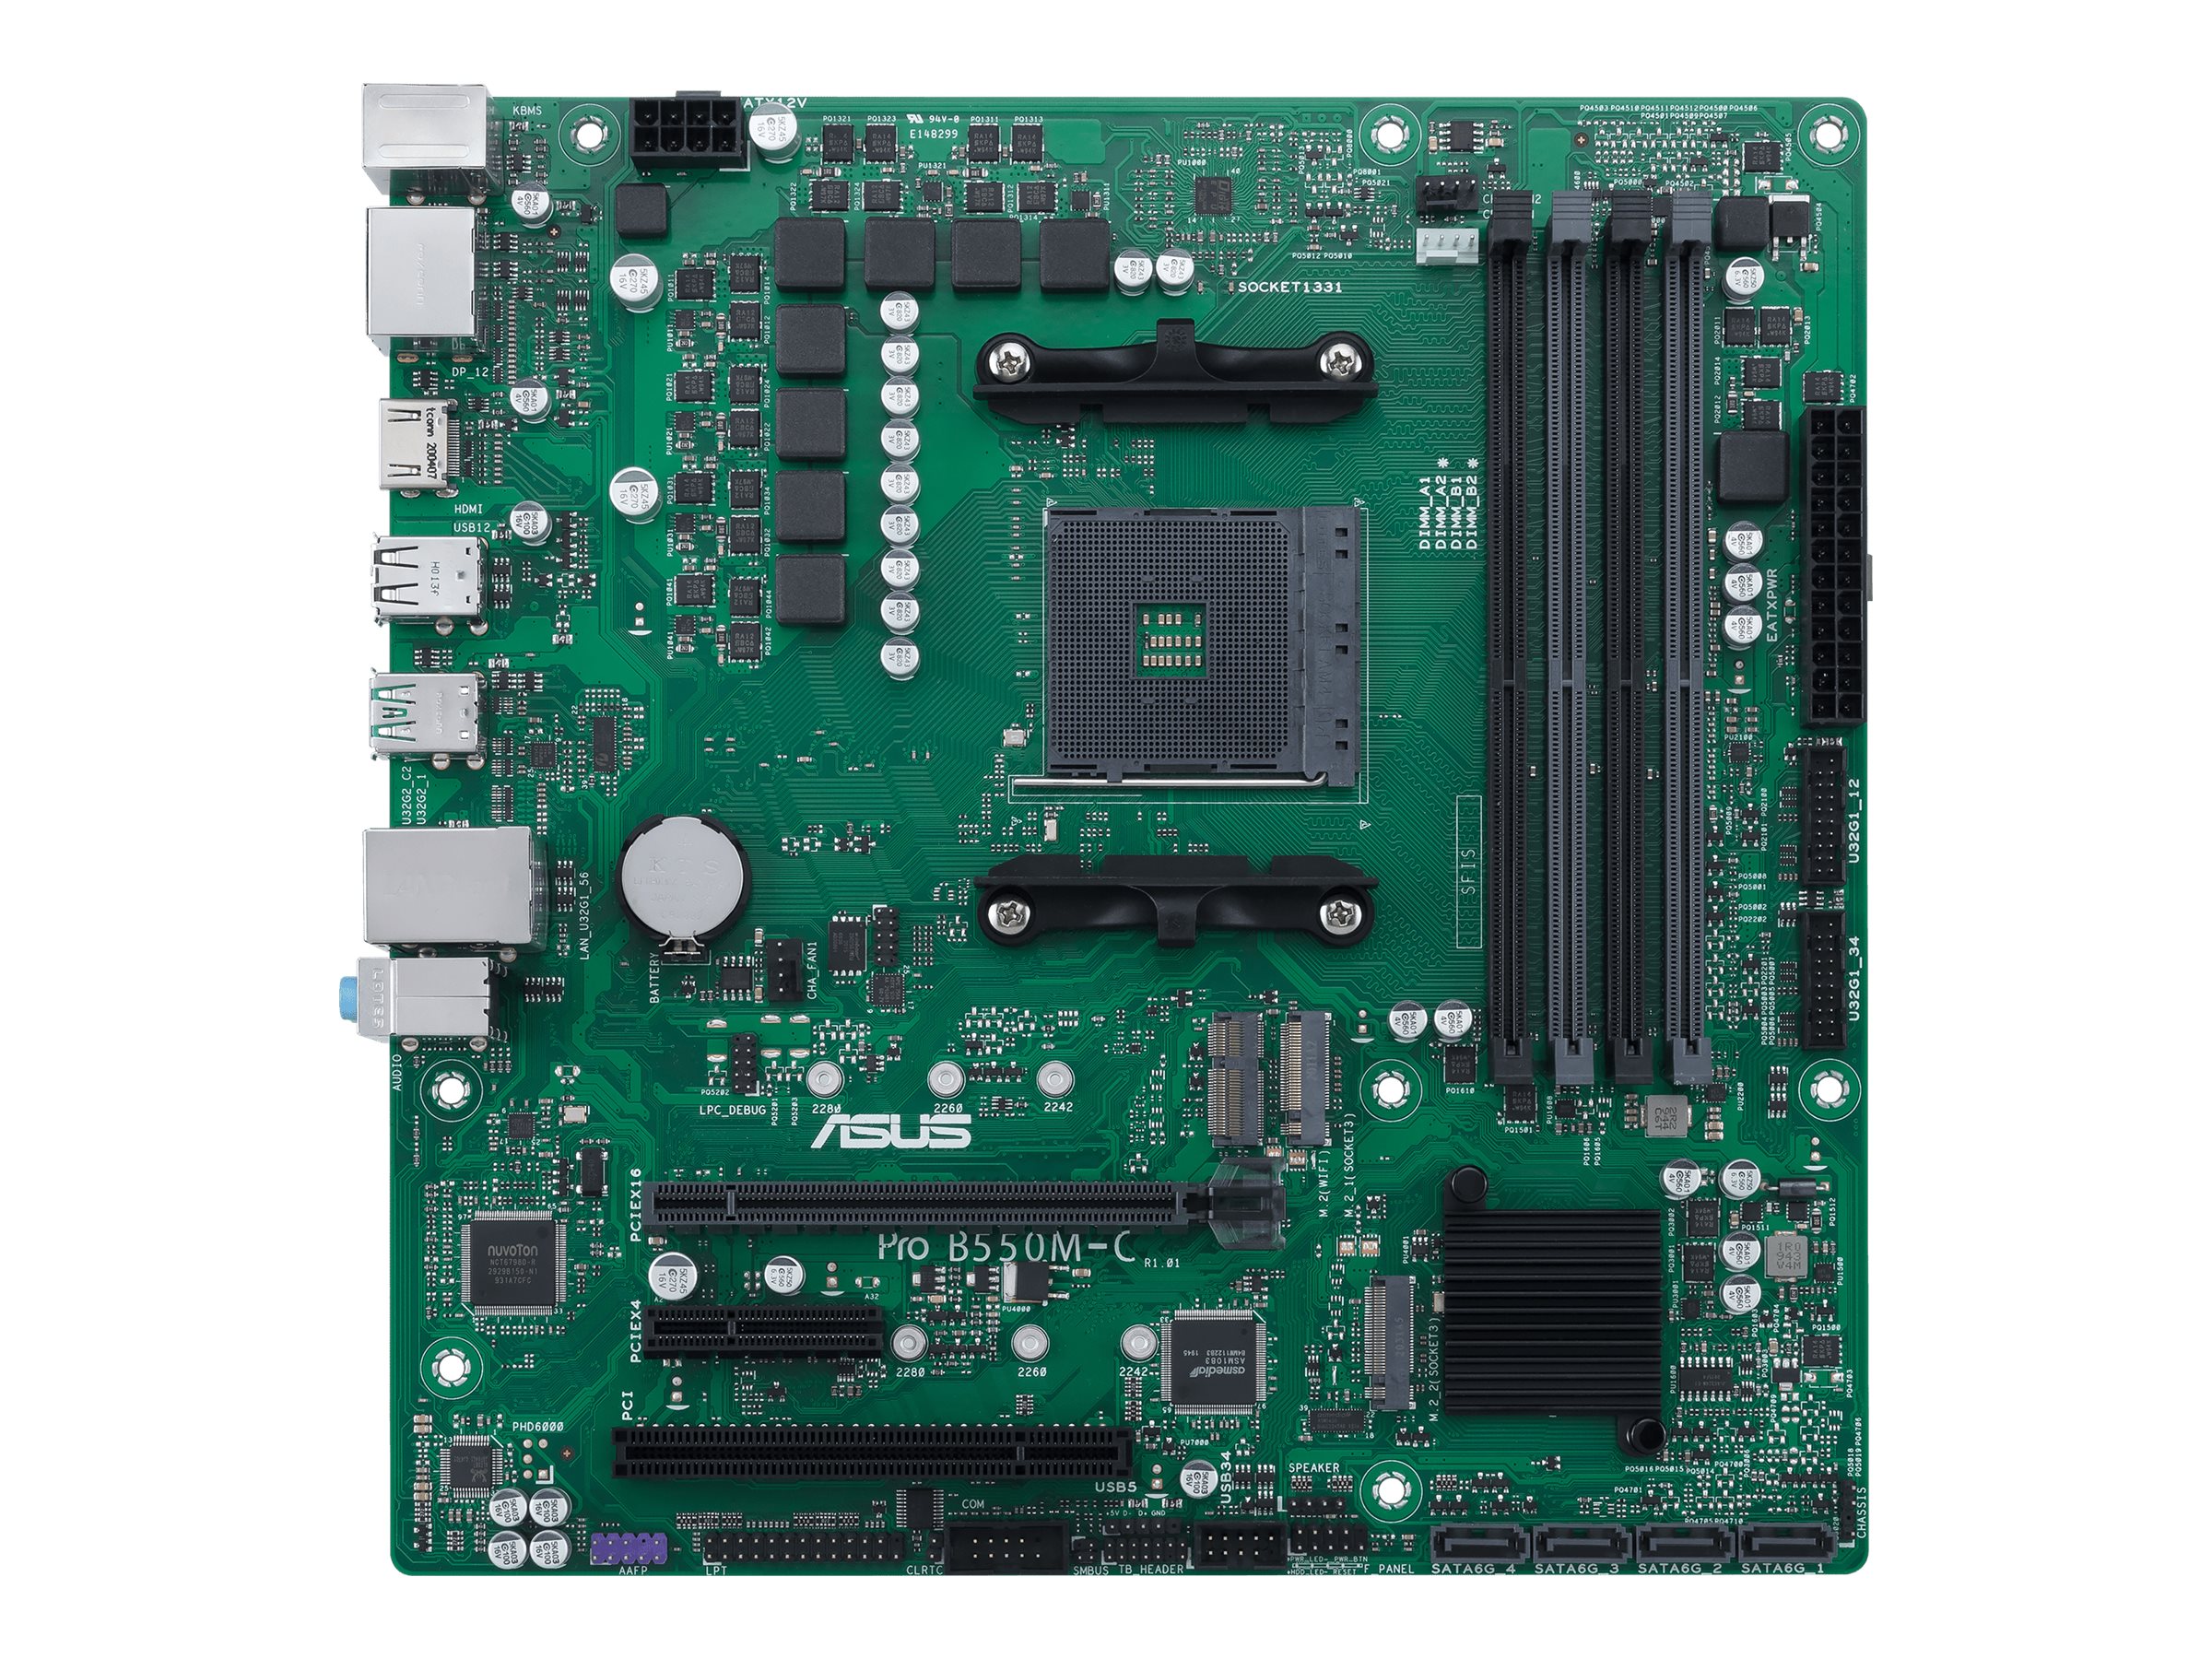 Vorschau: ASUS Pro B550M-C/CSM - Motherboard - micro ATX - Socket AM4 - AMD B550 - USB-C Gen2, USB 3.2 Gen 1, USB 3.2 Gen 2 - Gigabit LAN - Onboard-Grafik (CPU erforderlich)